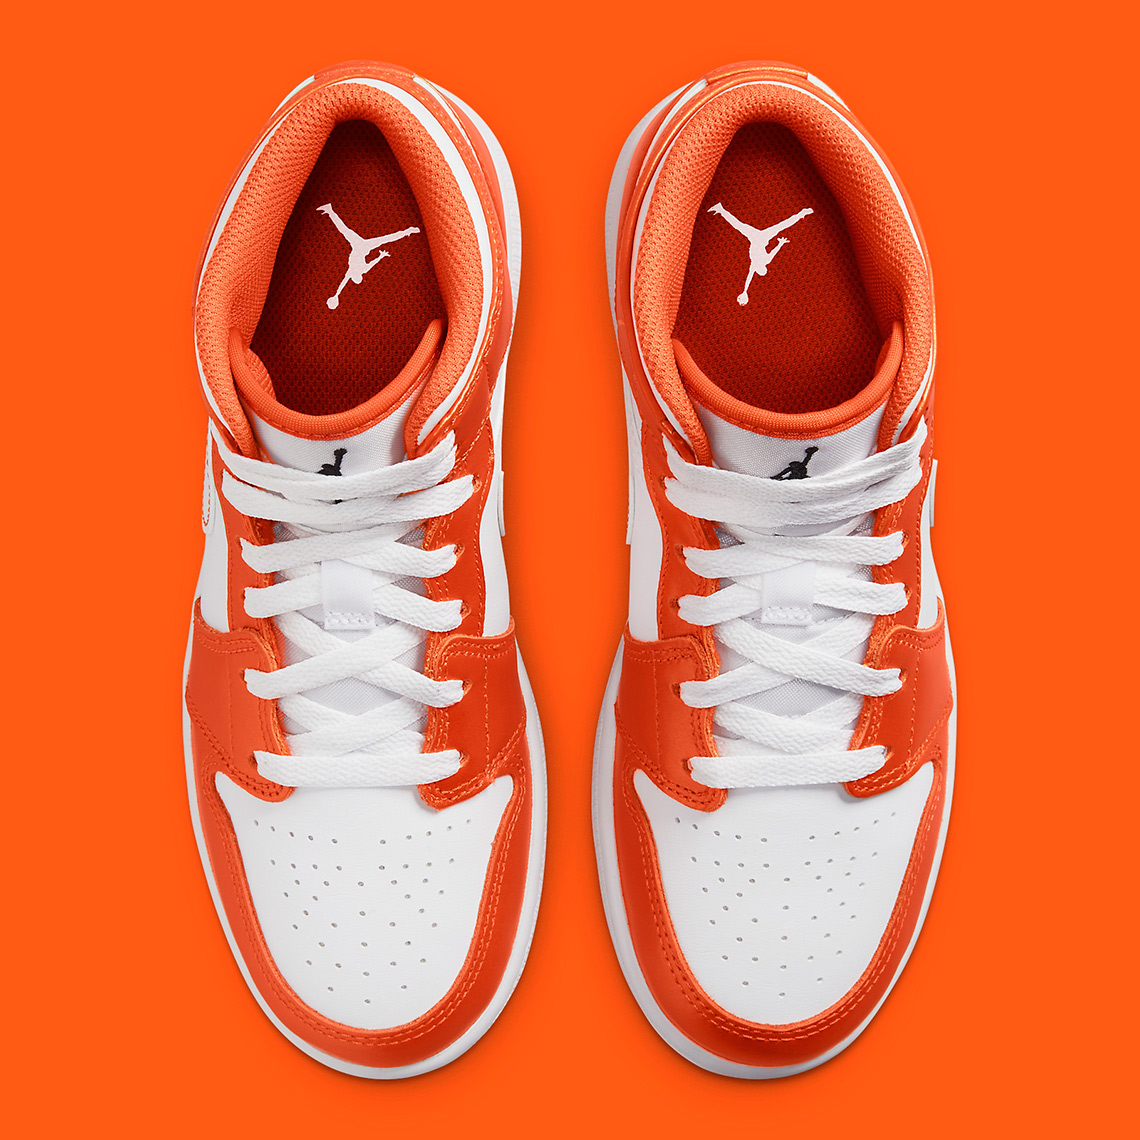 orange jordan shoes